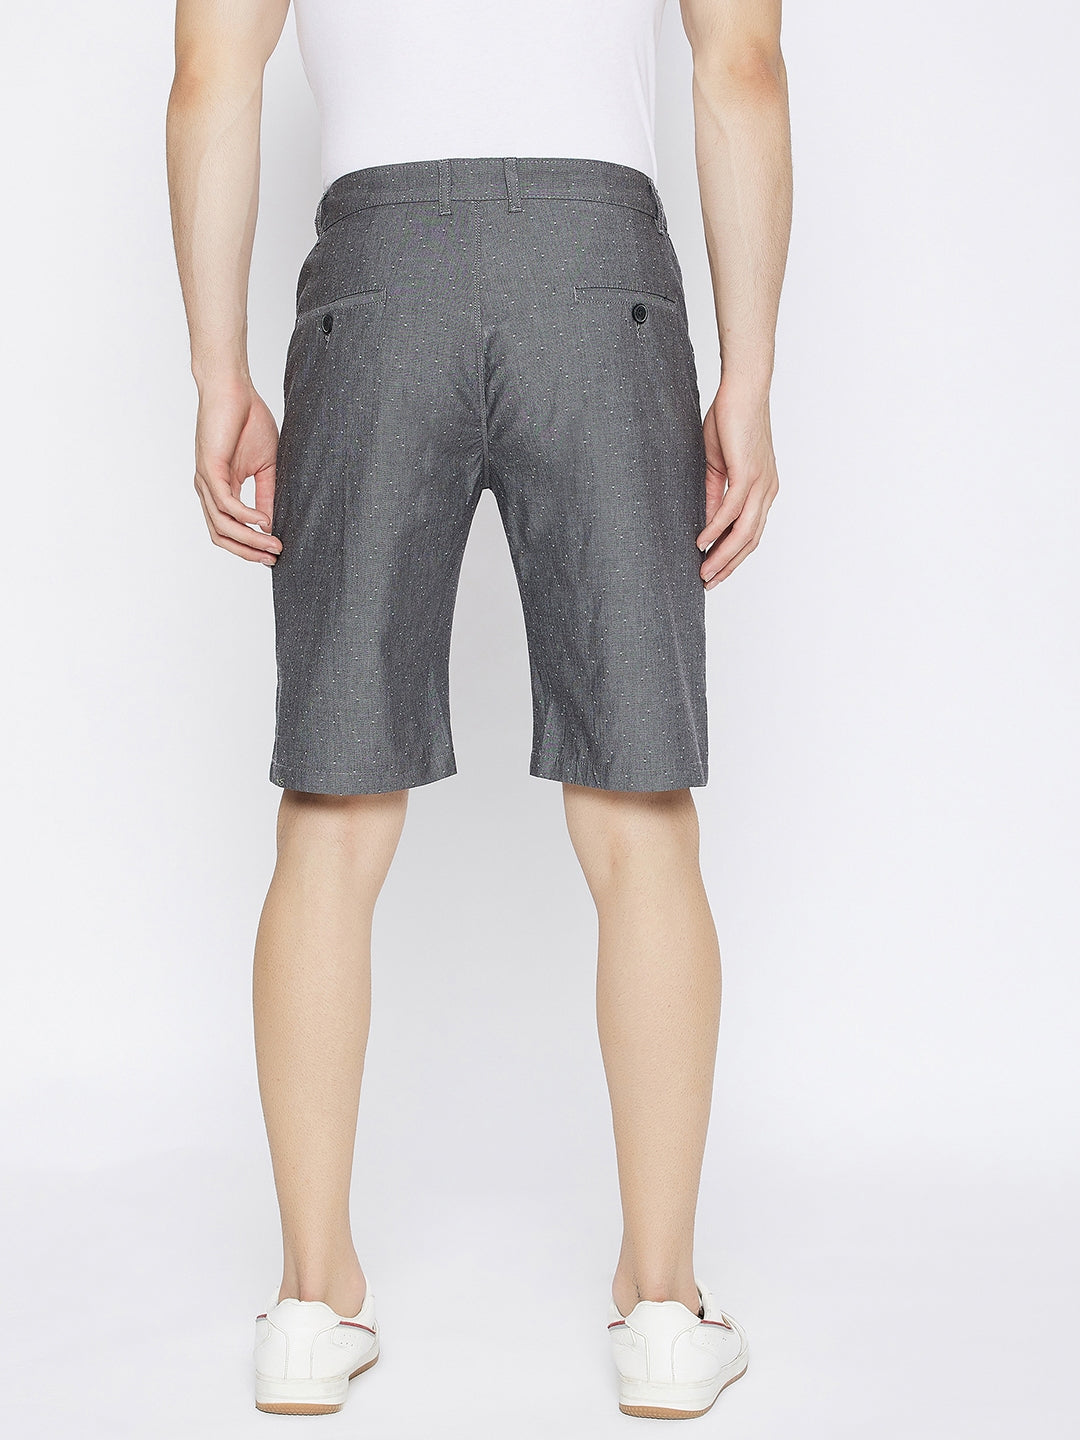 Charcoal Printed Slim Fit Shorts - Men Shorts